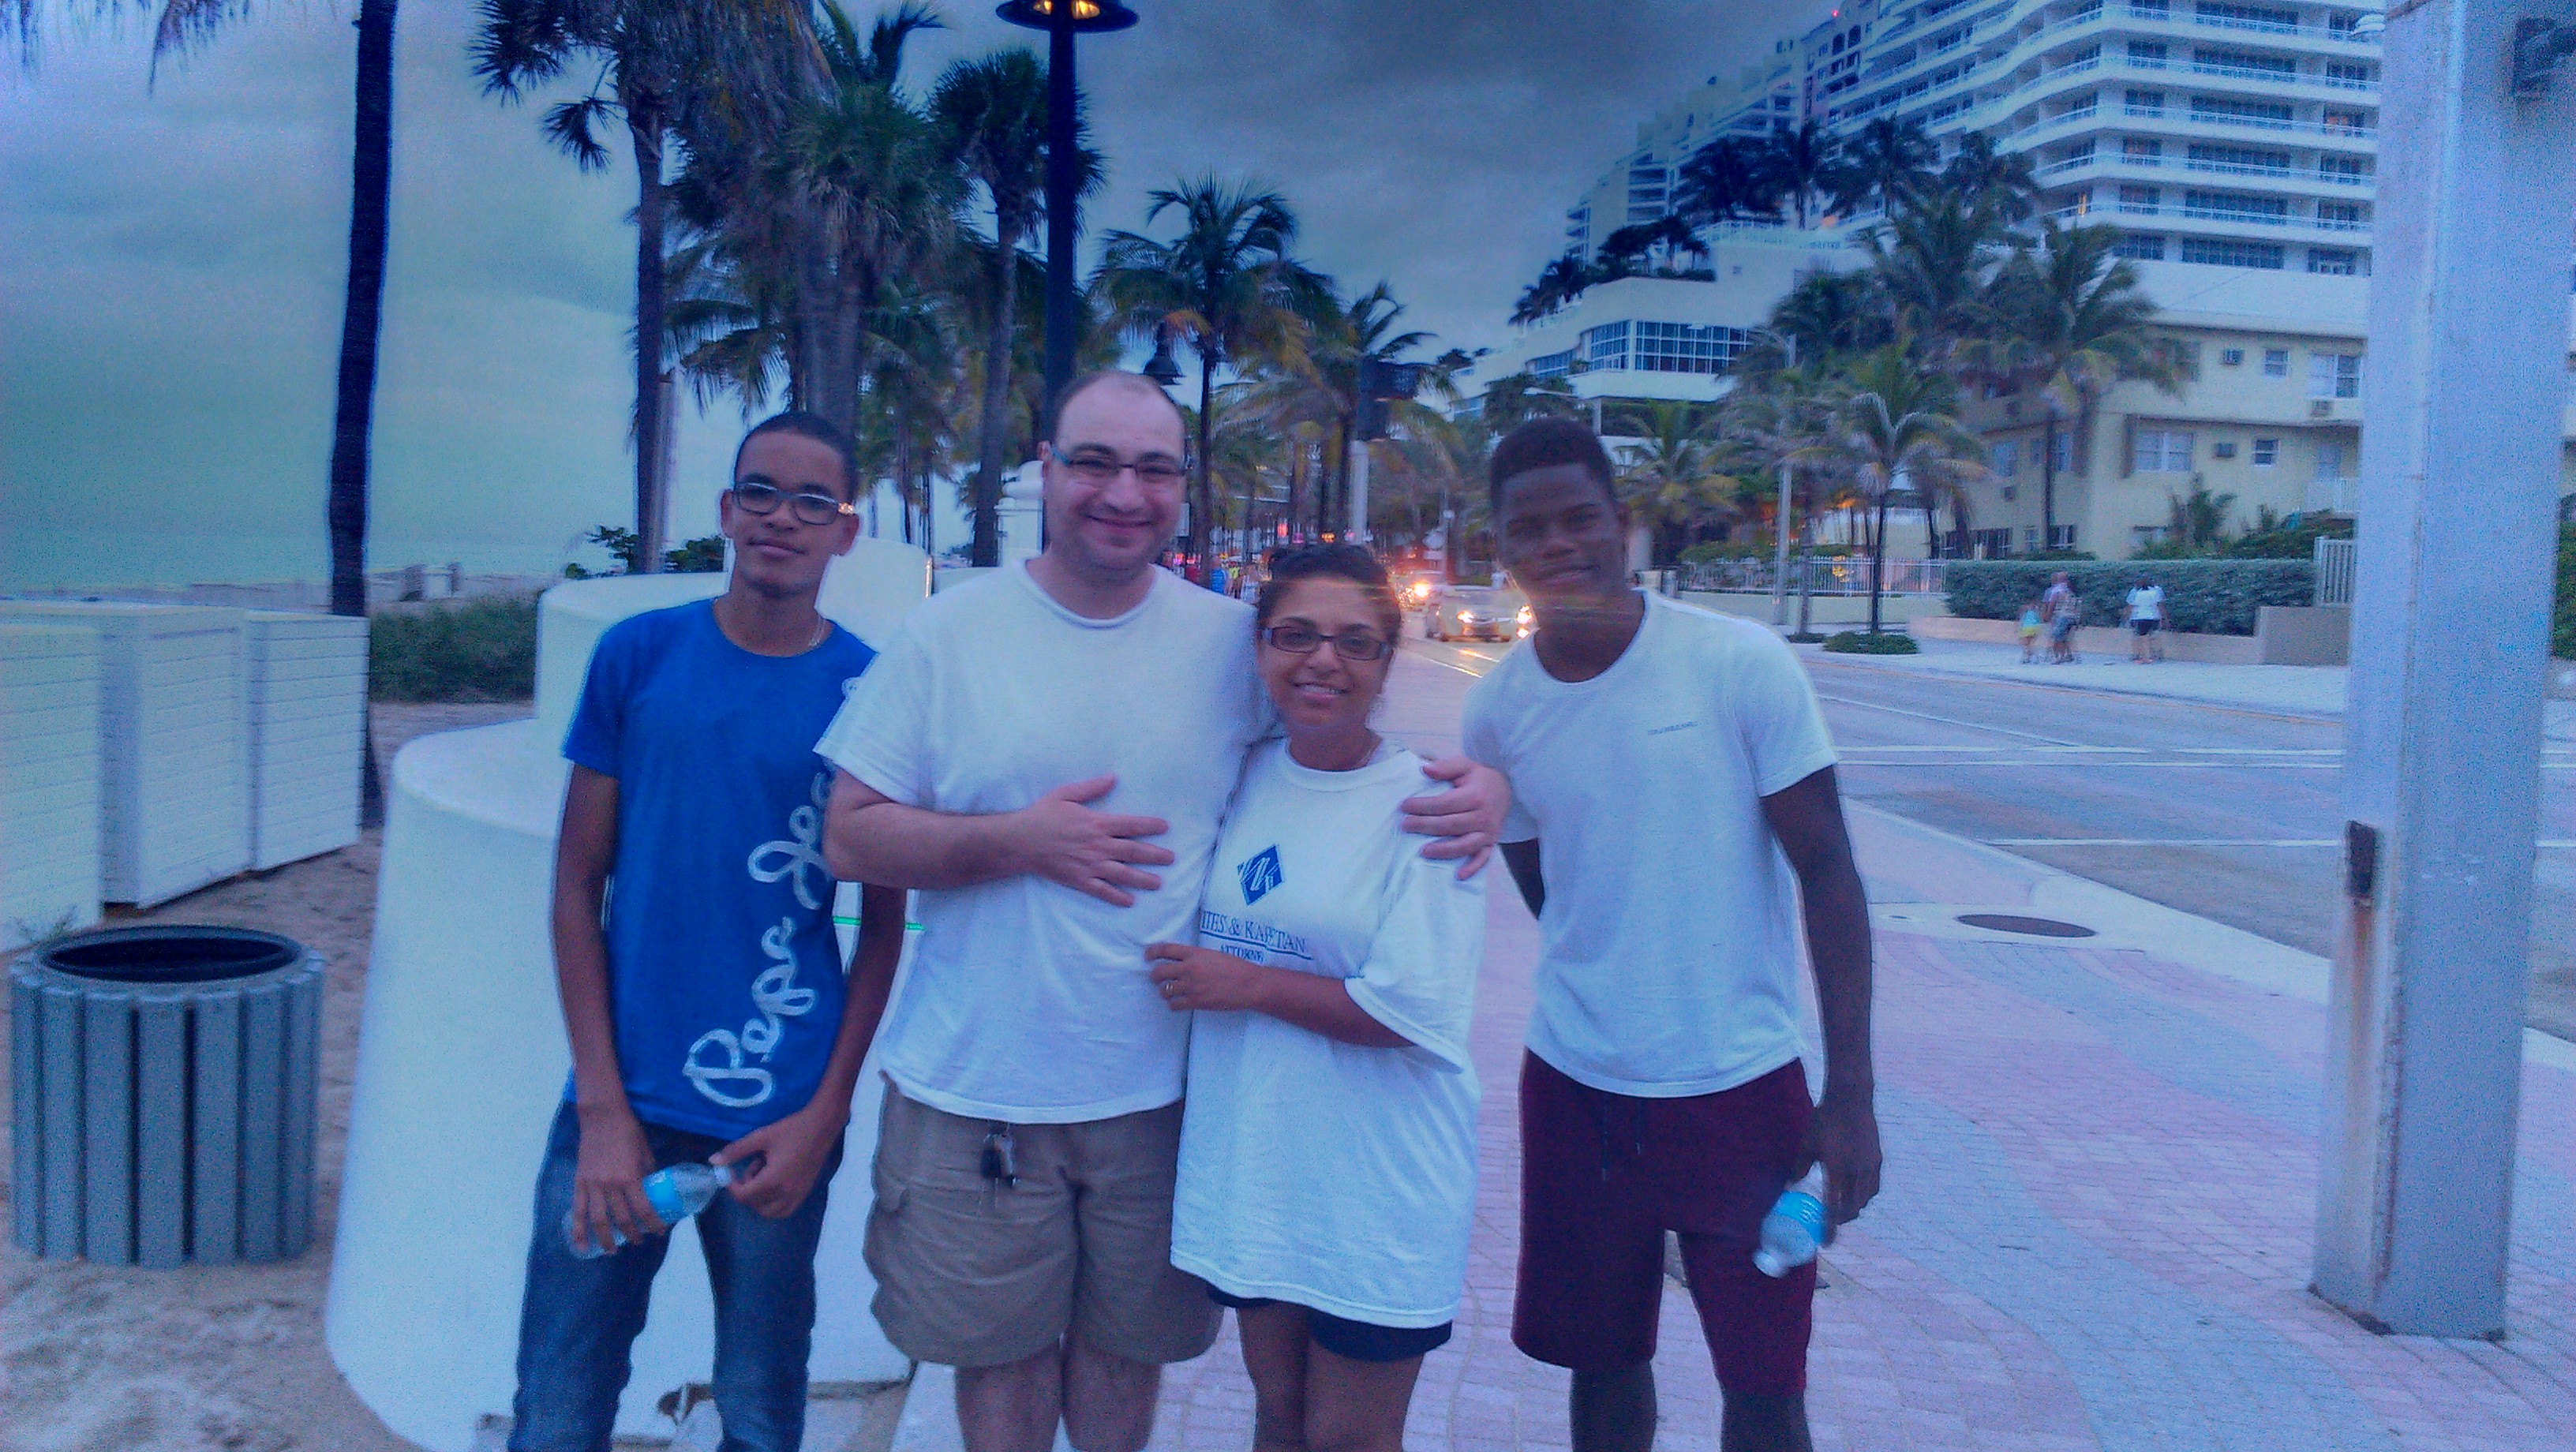 Jordy e Willy da colônia francesa Guadaloupe, no Caribe. Nossos estudantes do mês de julho/2014.